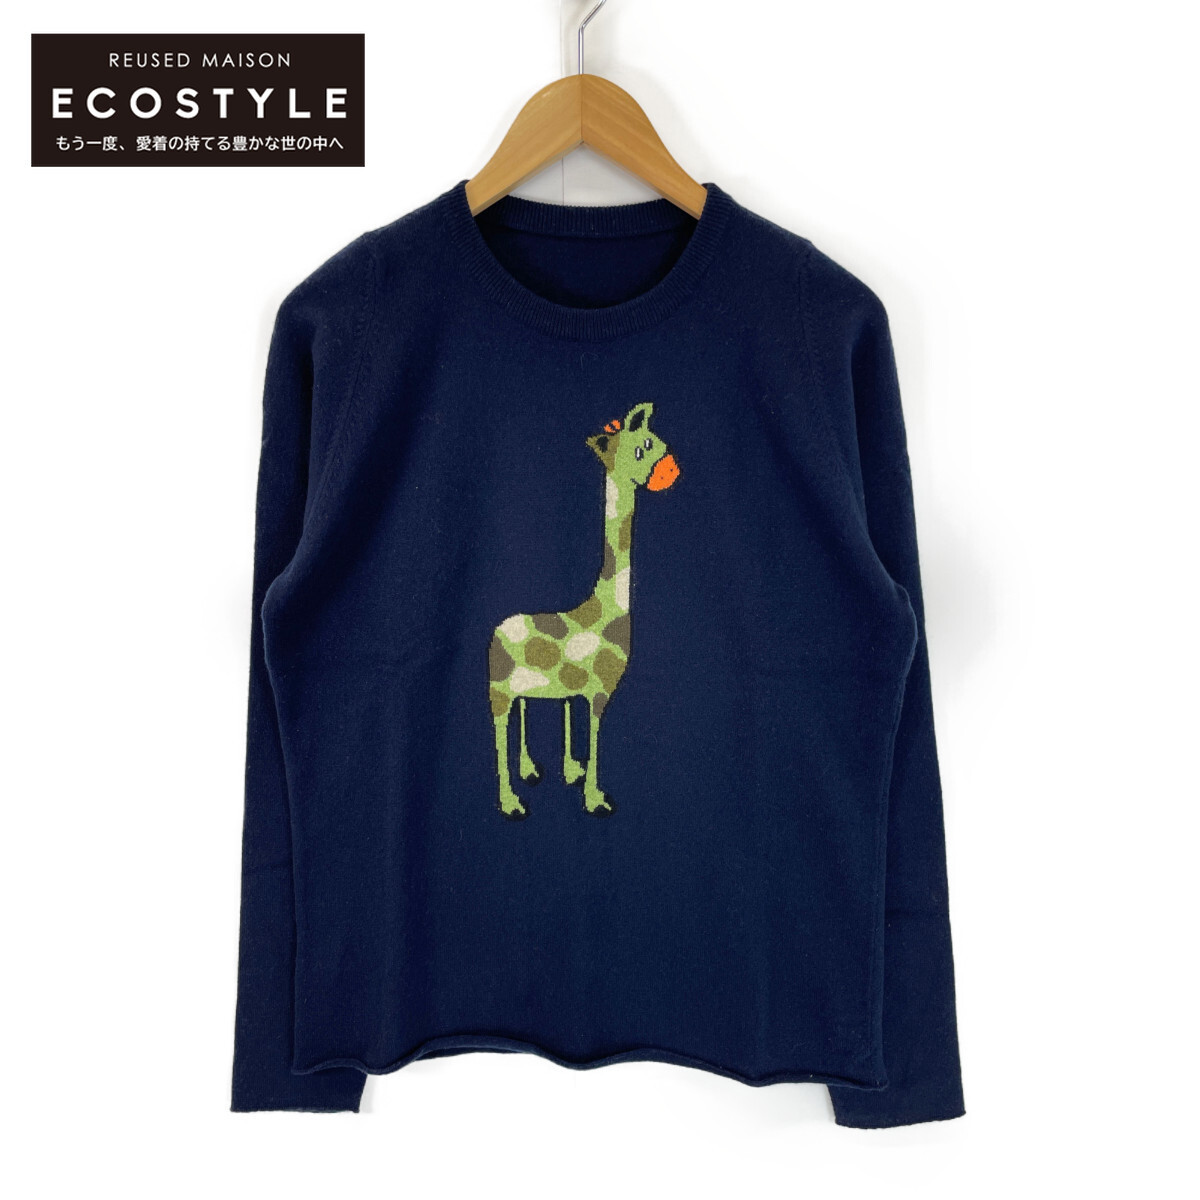  beautiful goods / domestic regular lucien pellat-finet Lucien Pellat-Finet cashmere 100% giraffe knitted sweater / tops S navy x green men's 